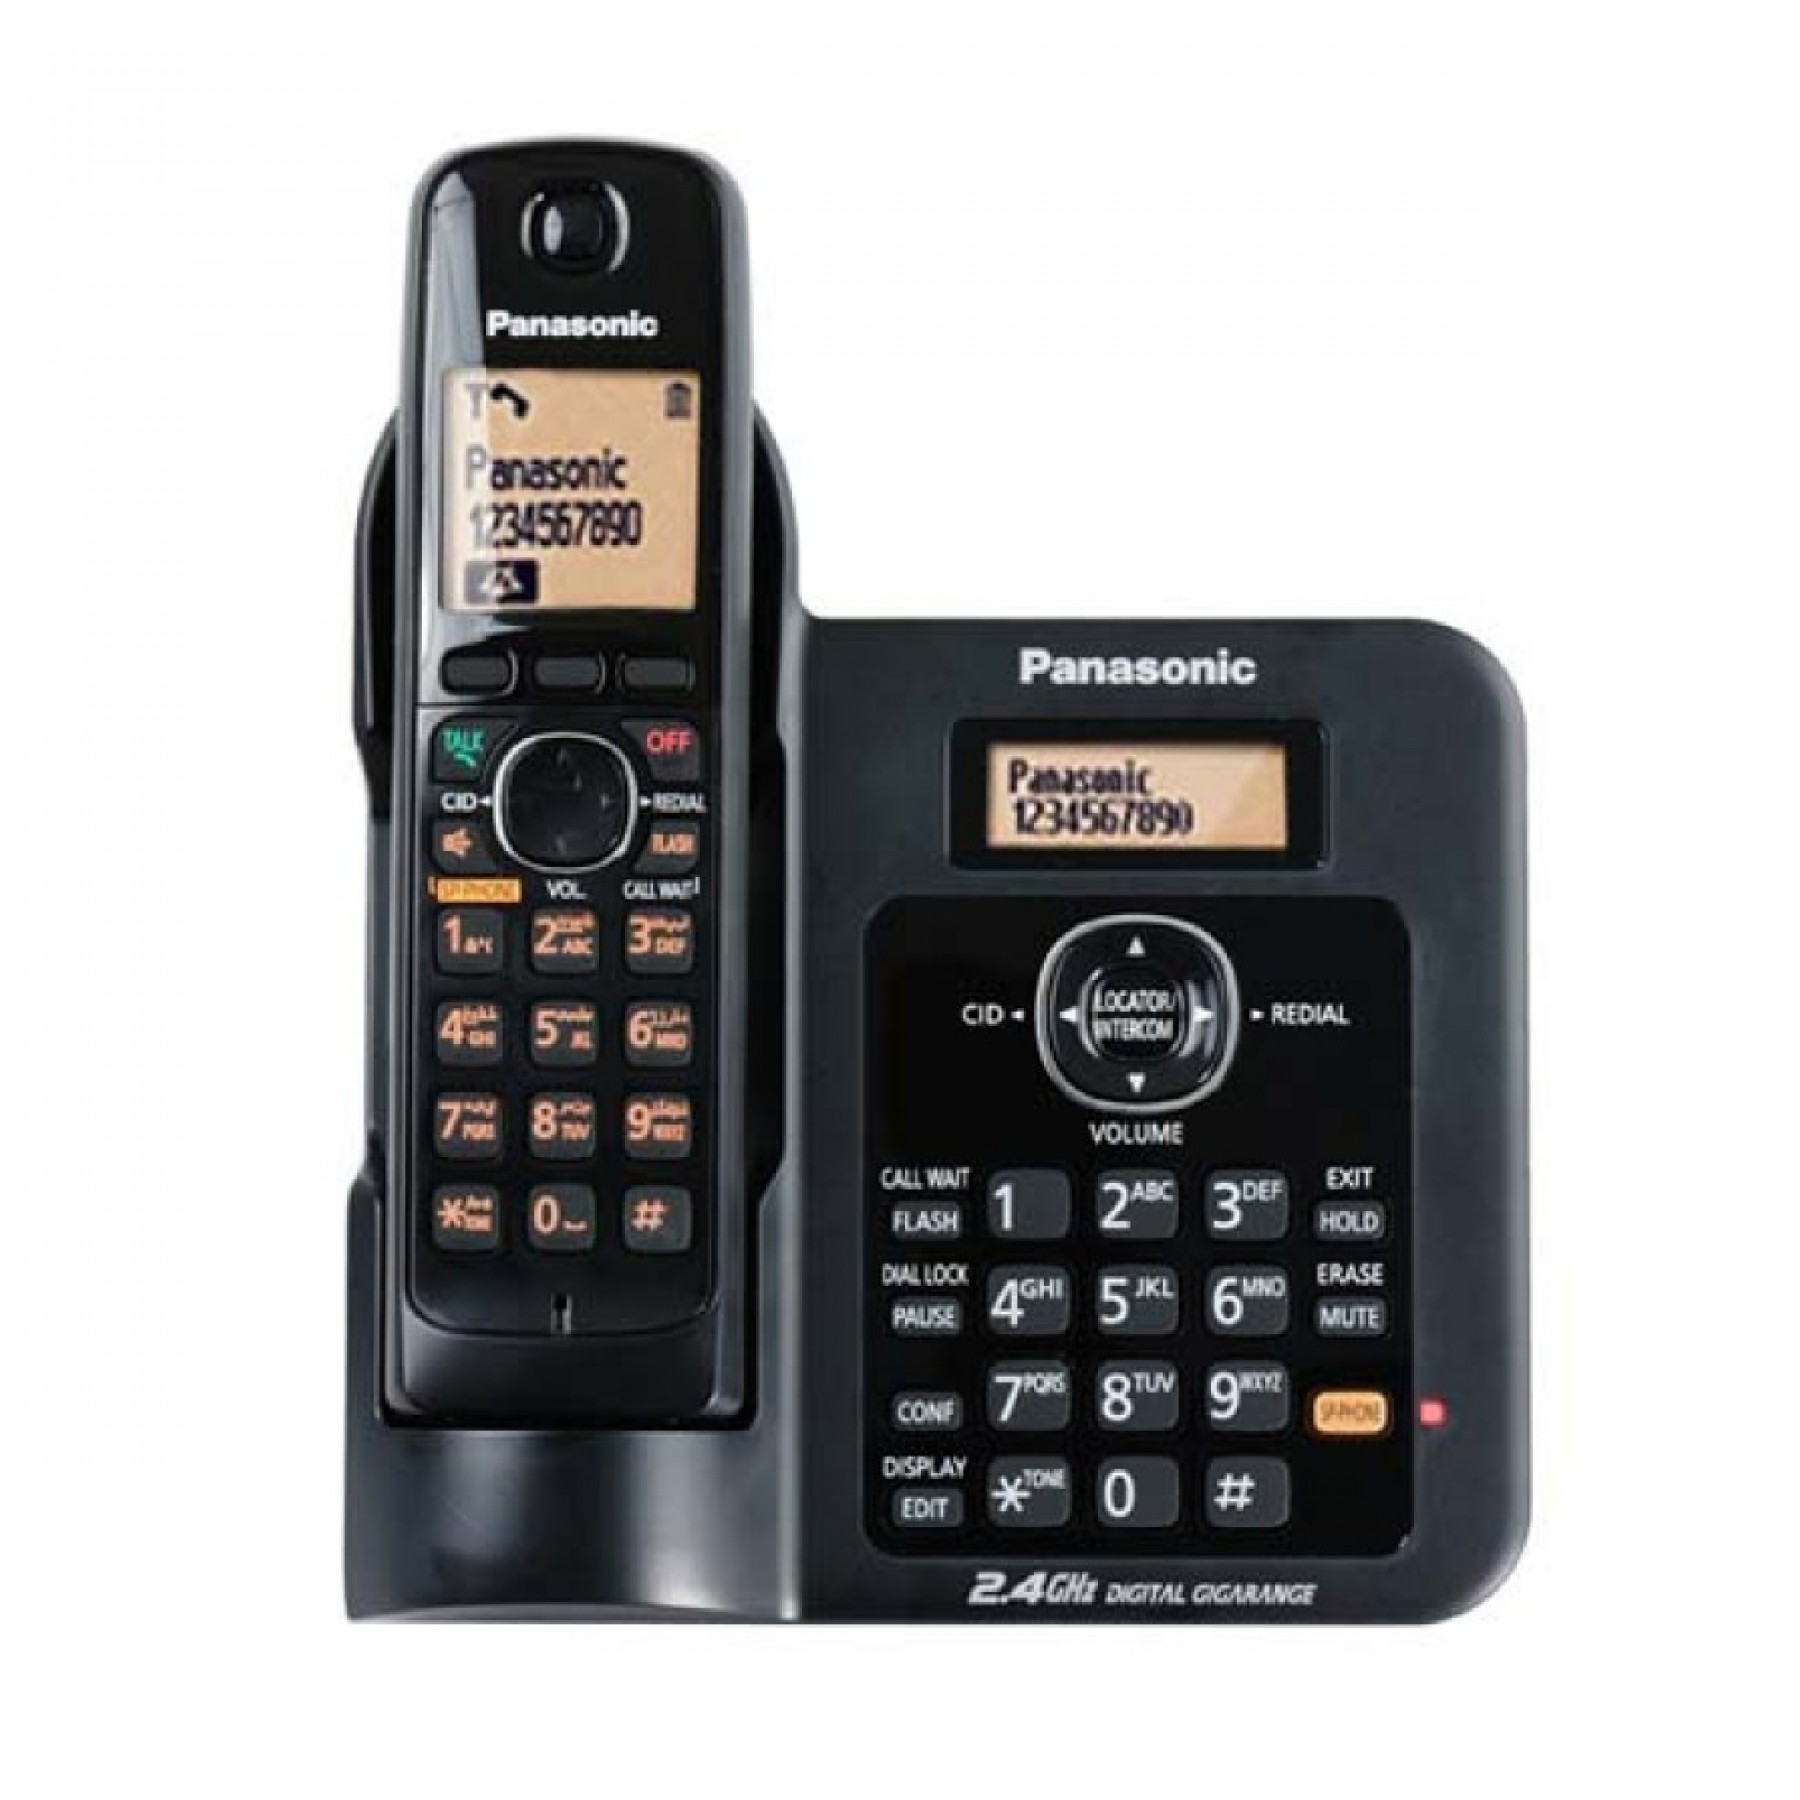 Panasonic Cordless Phone (Black), KX-TG3811